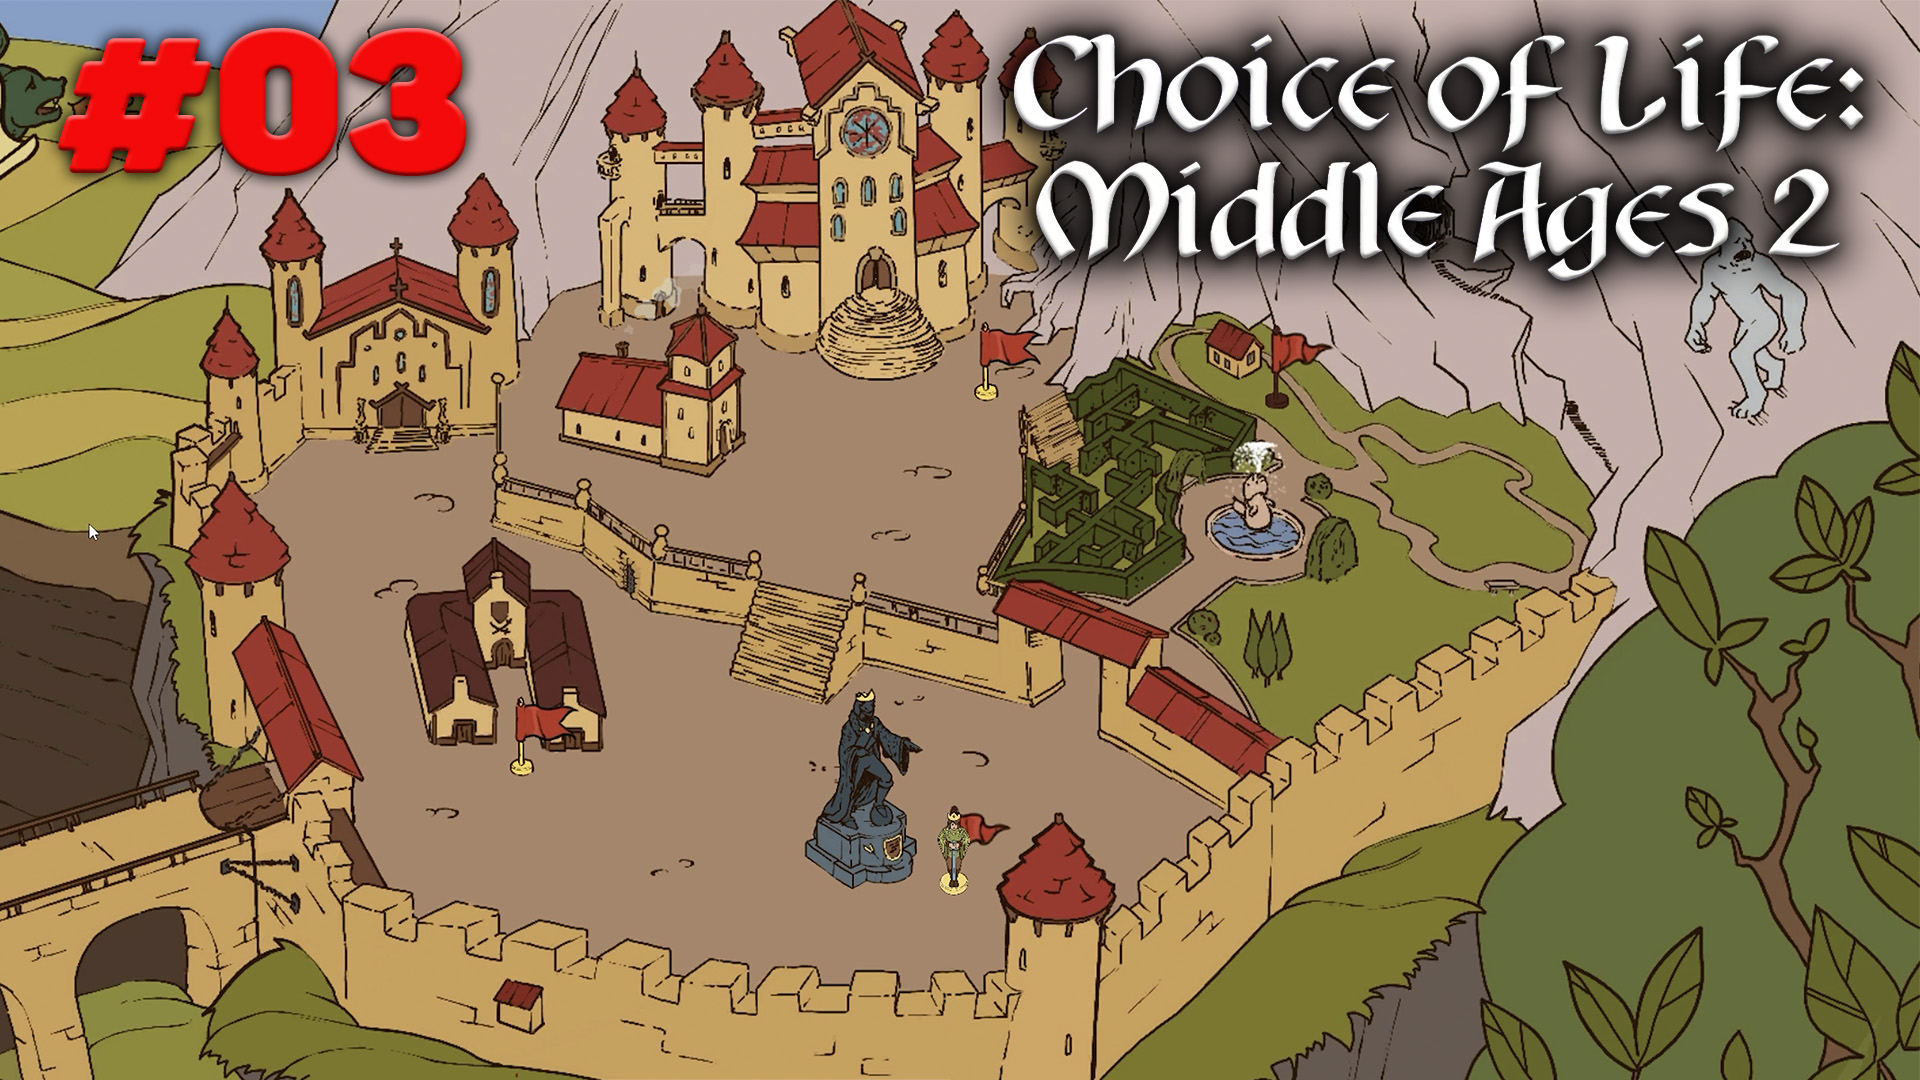 Choice of life middle андроид. The choice of Life Middle ages игра. Choice of Life: Middle ages 2. The choice of Life Middle ages карта. Choice of Life: Middle ages 2 Элис.